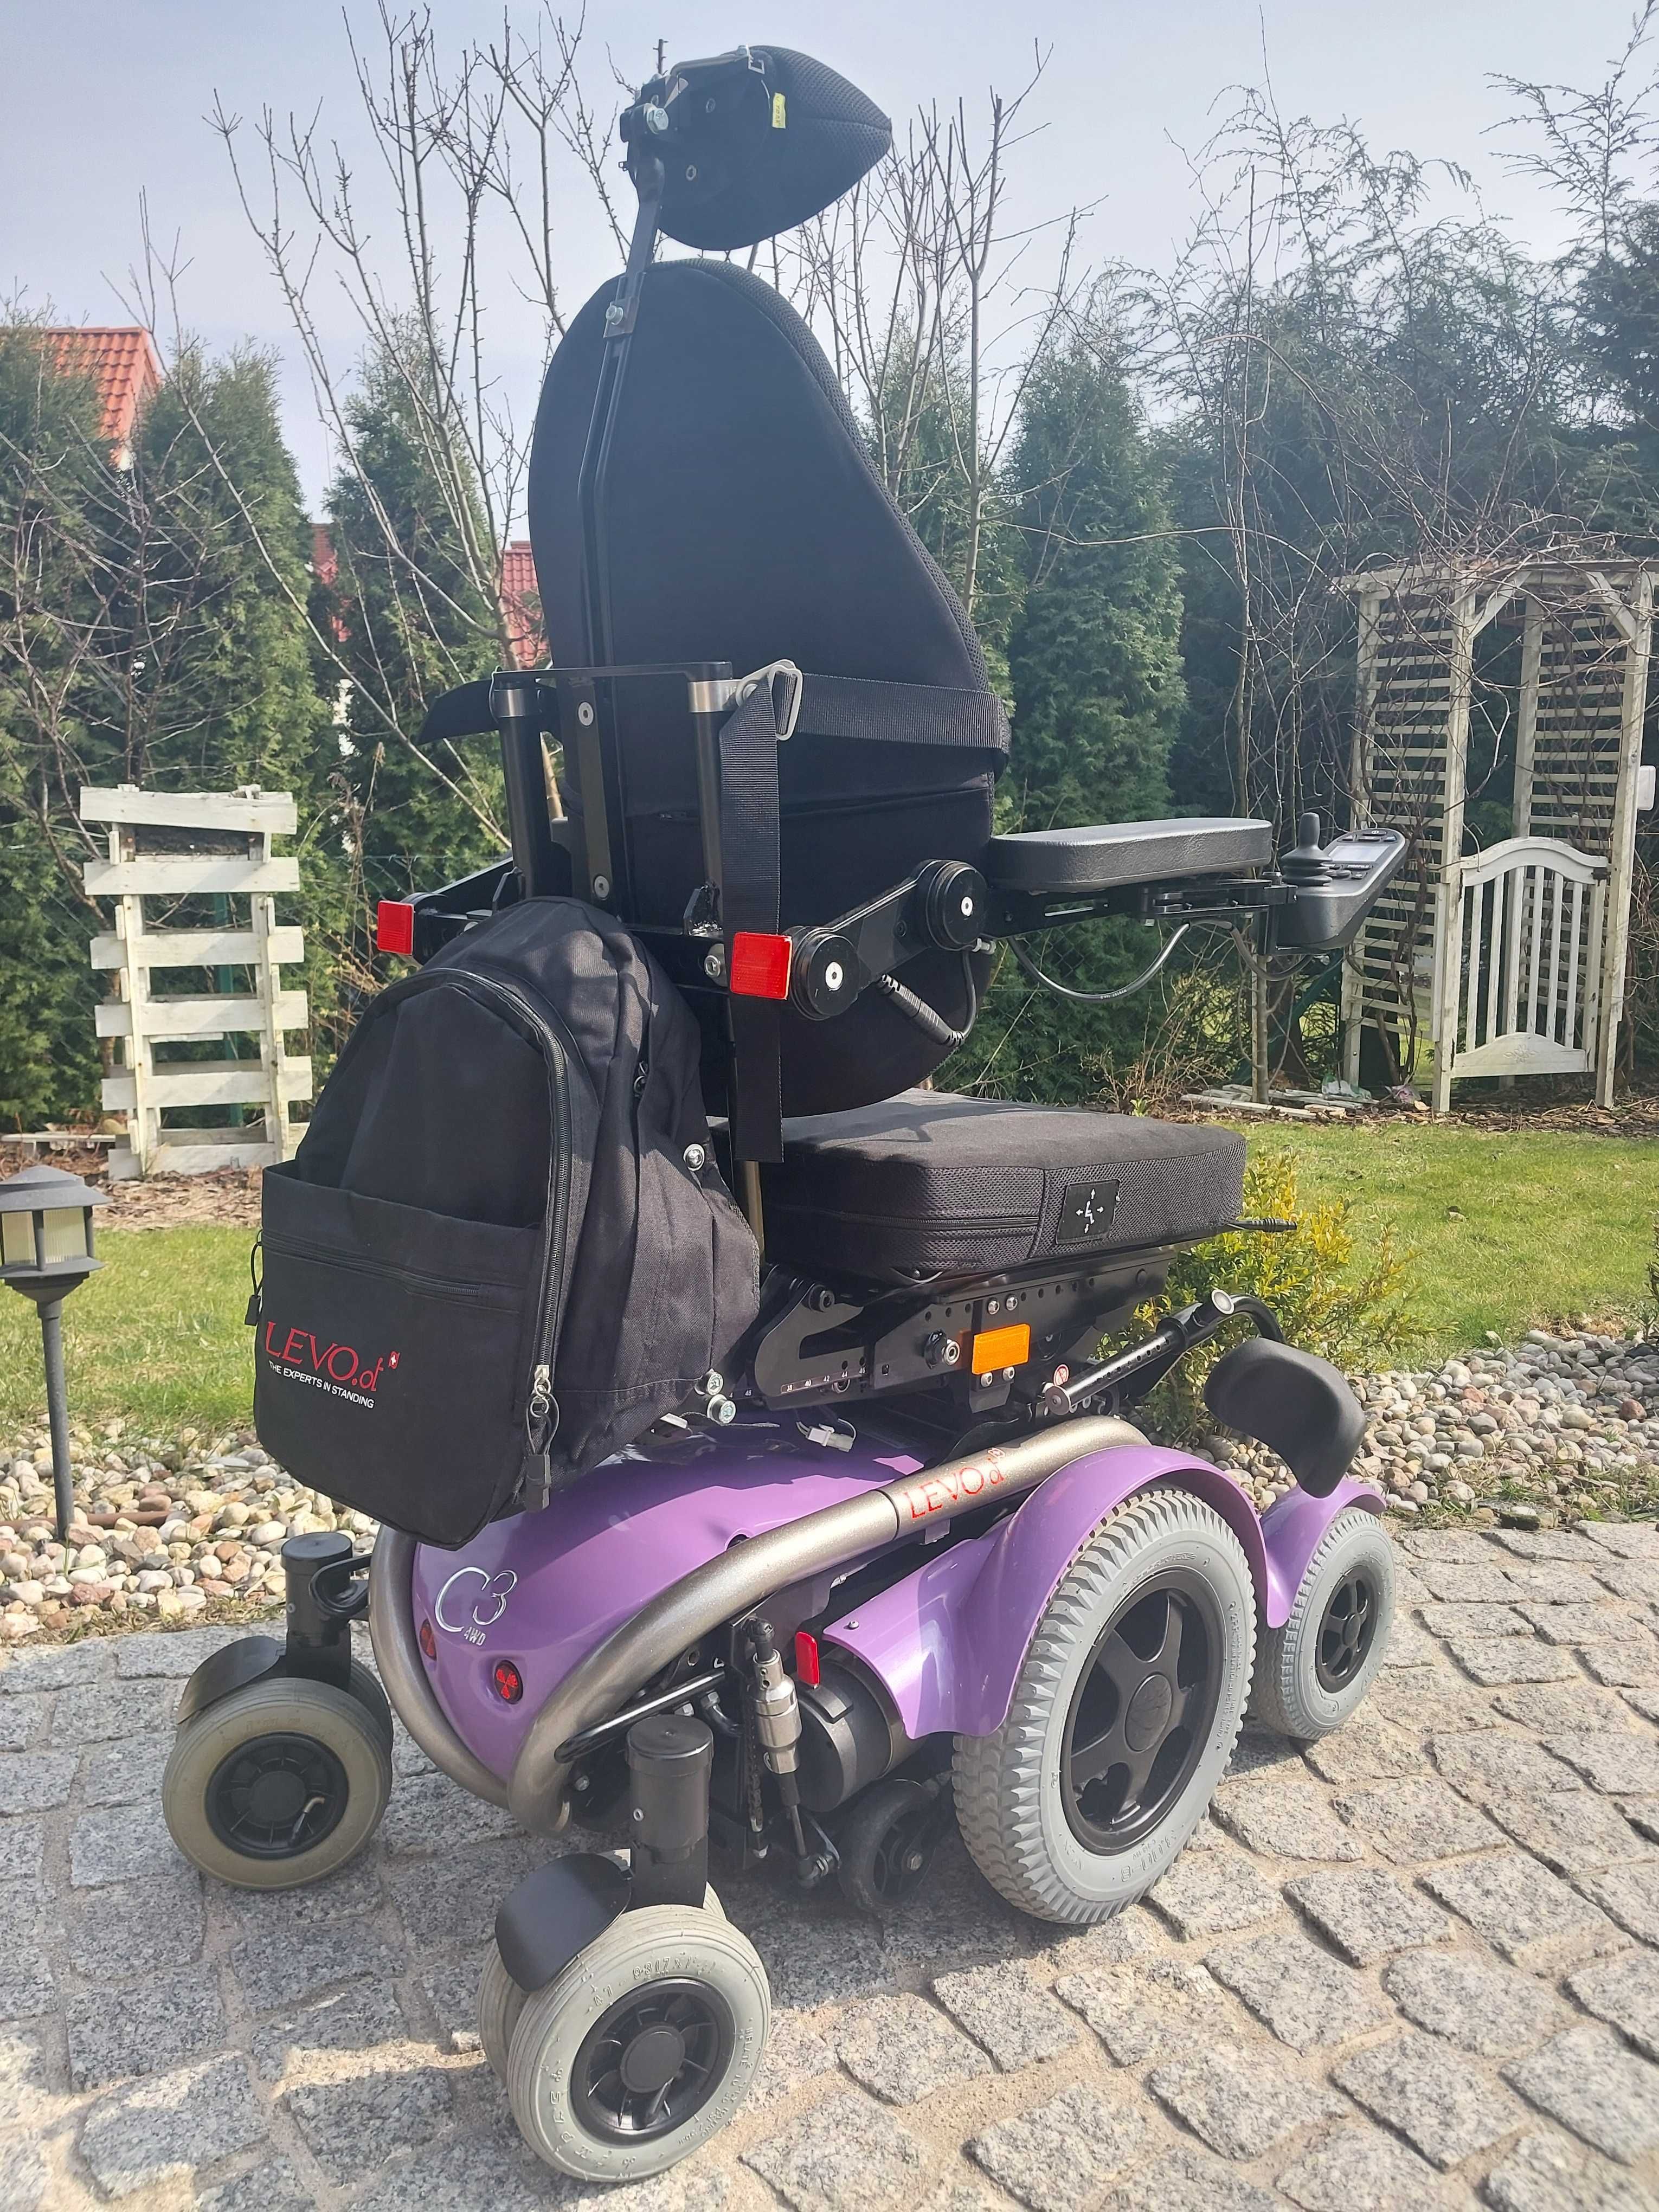 Nowy wózek inwalidzki elektr. LEVO C3 z funkcją stania pełna elektryka